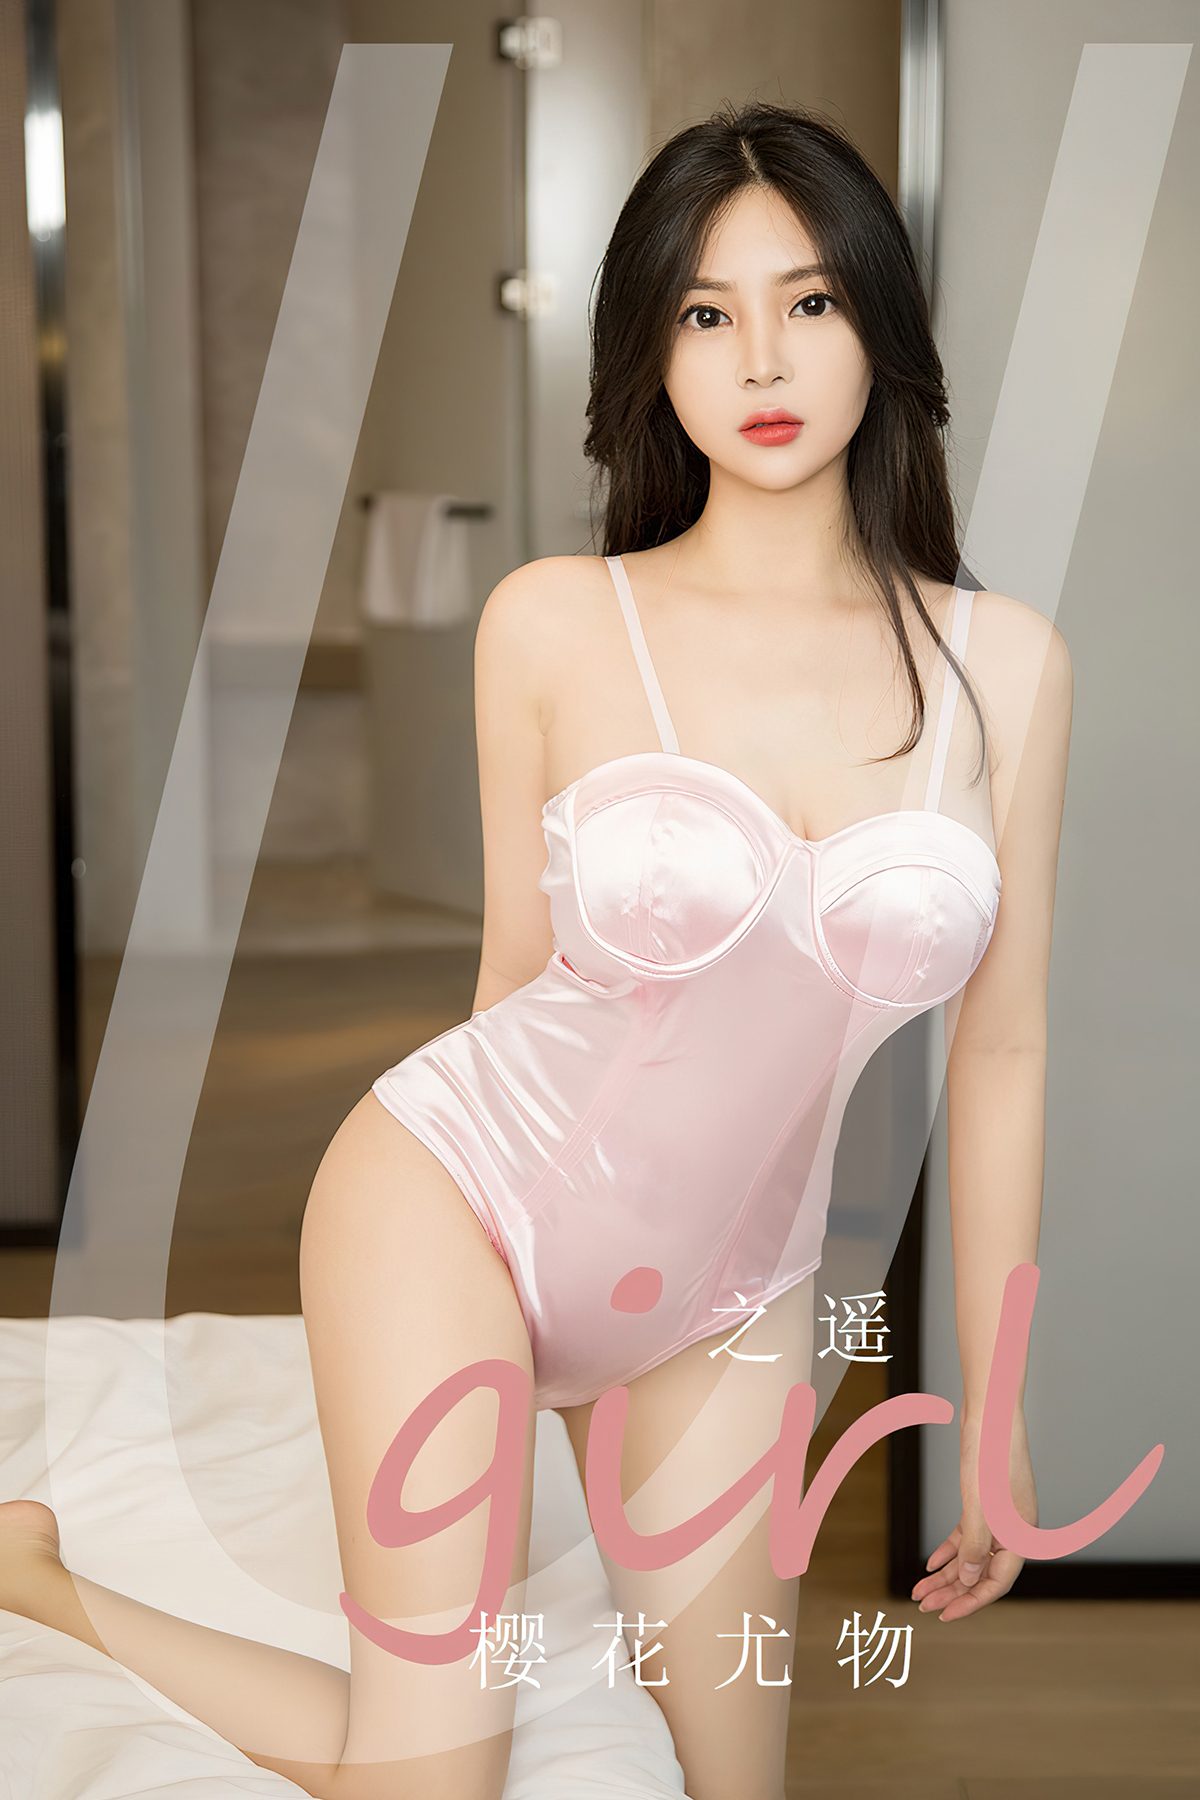 View - Ugirls App NO.2721 Zhi Yao - 